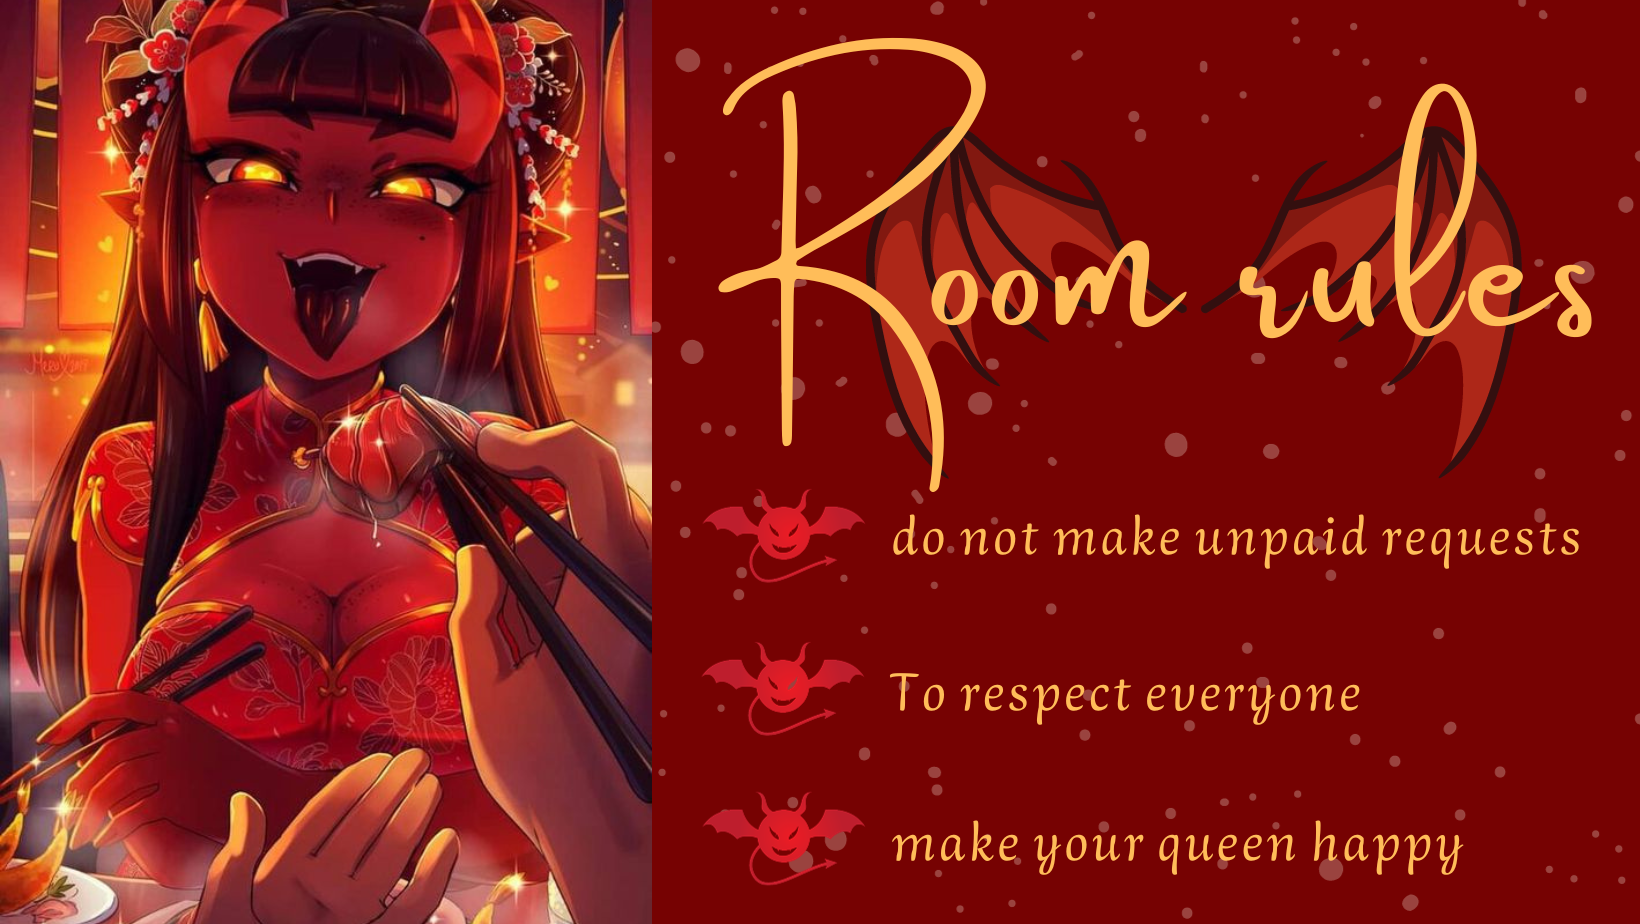 BiirdyDaviis Room Rules image: 1